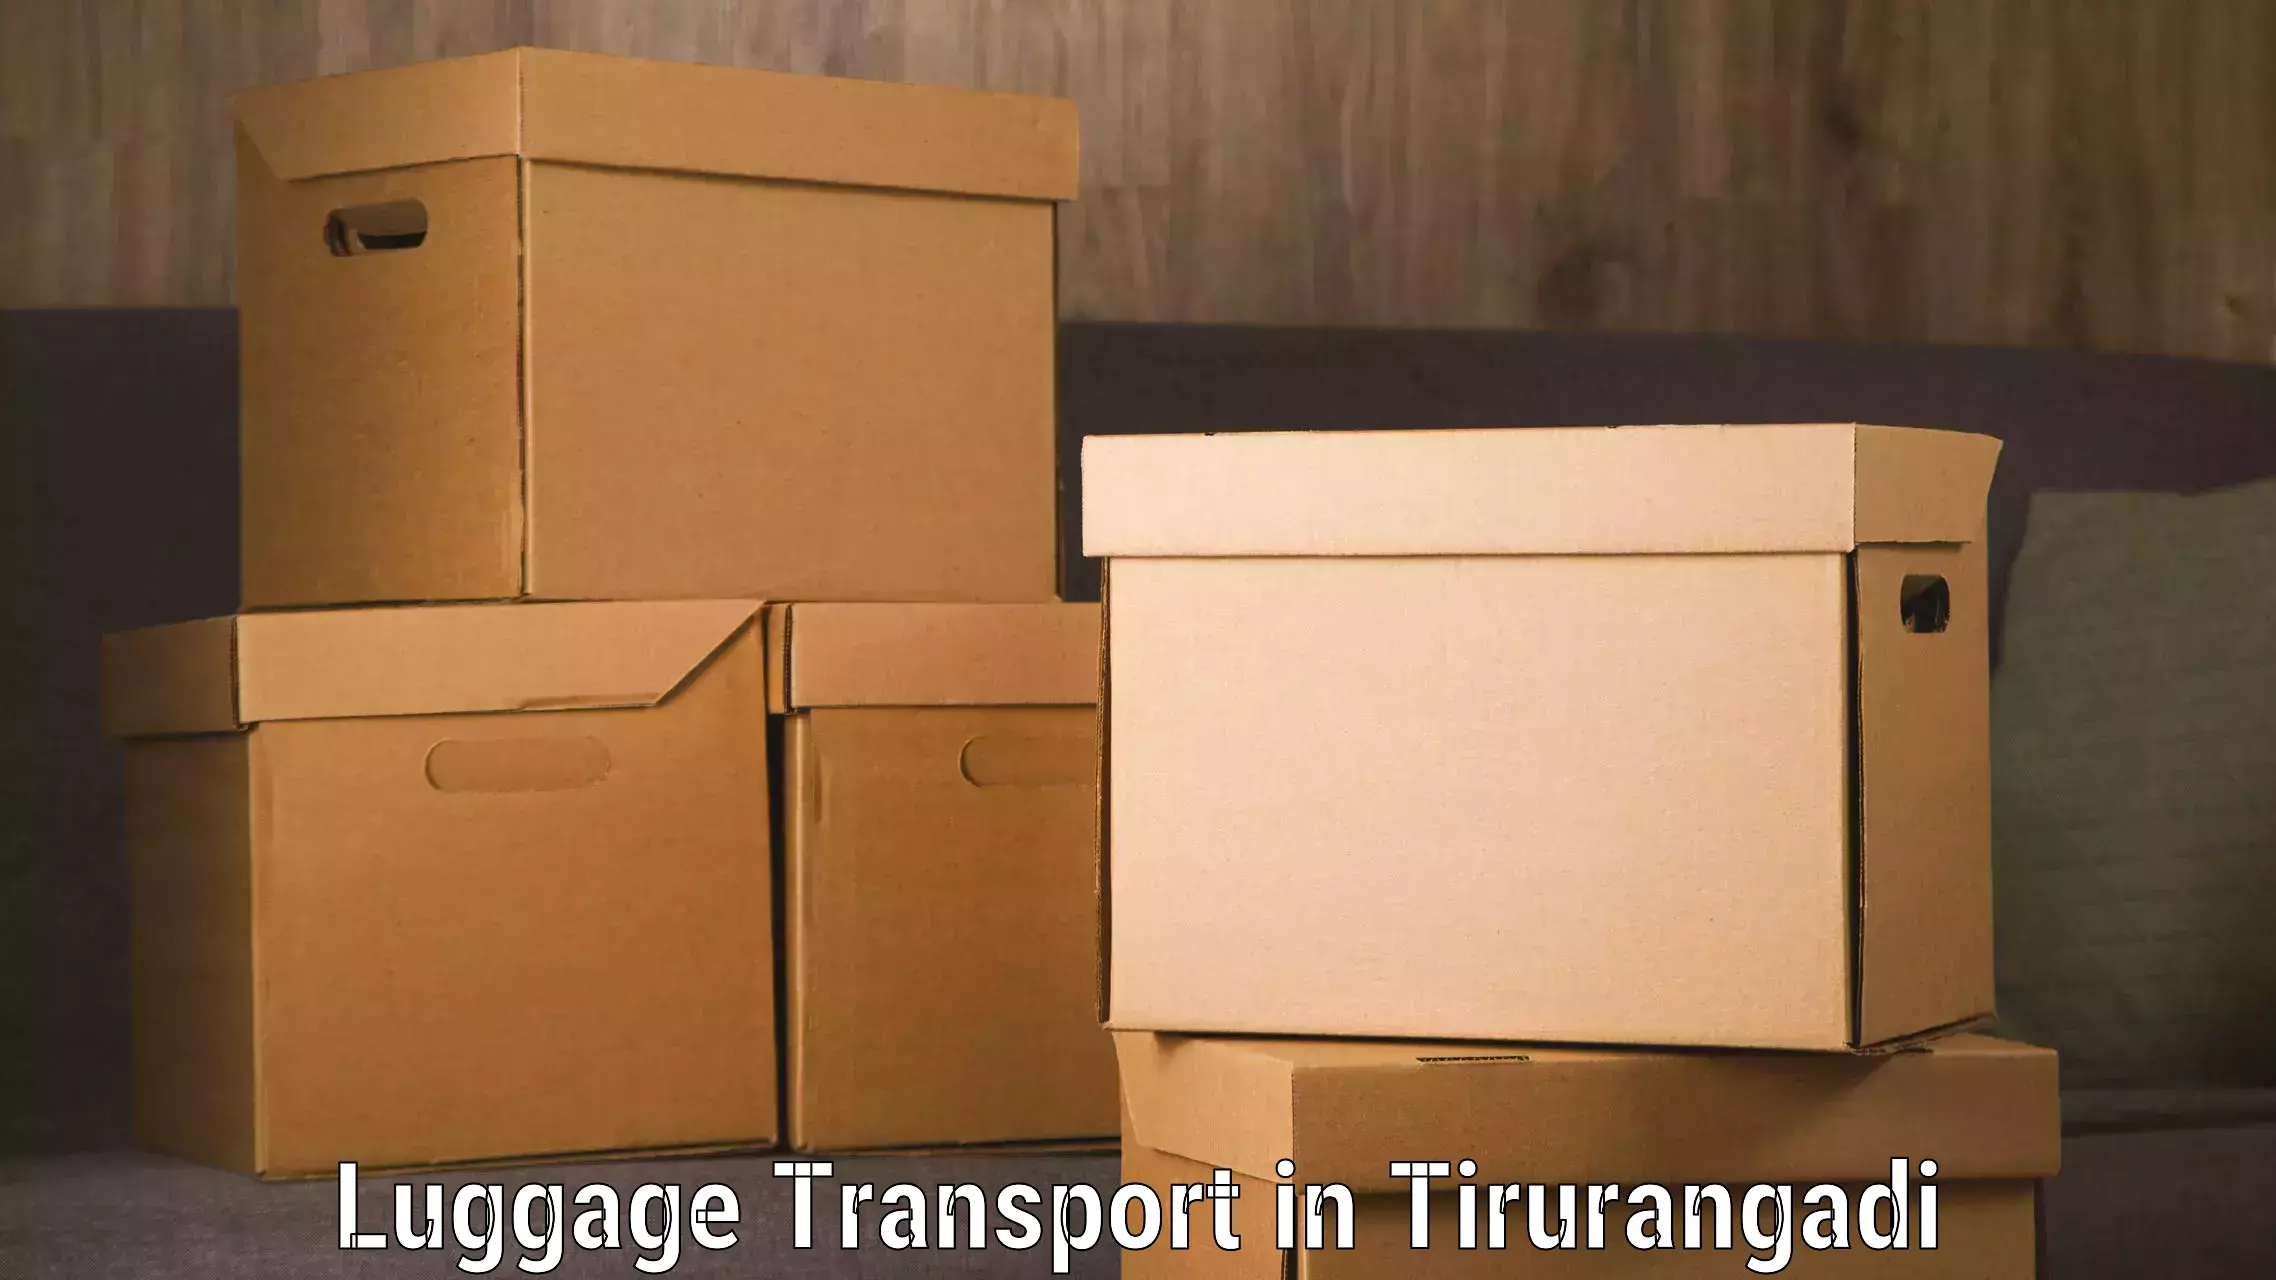 Luggage transport service in Tirurangadi